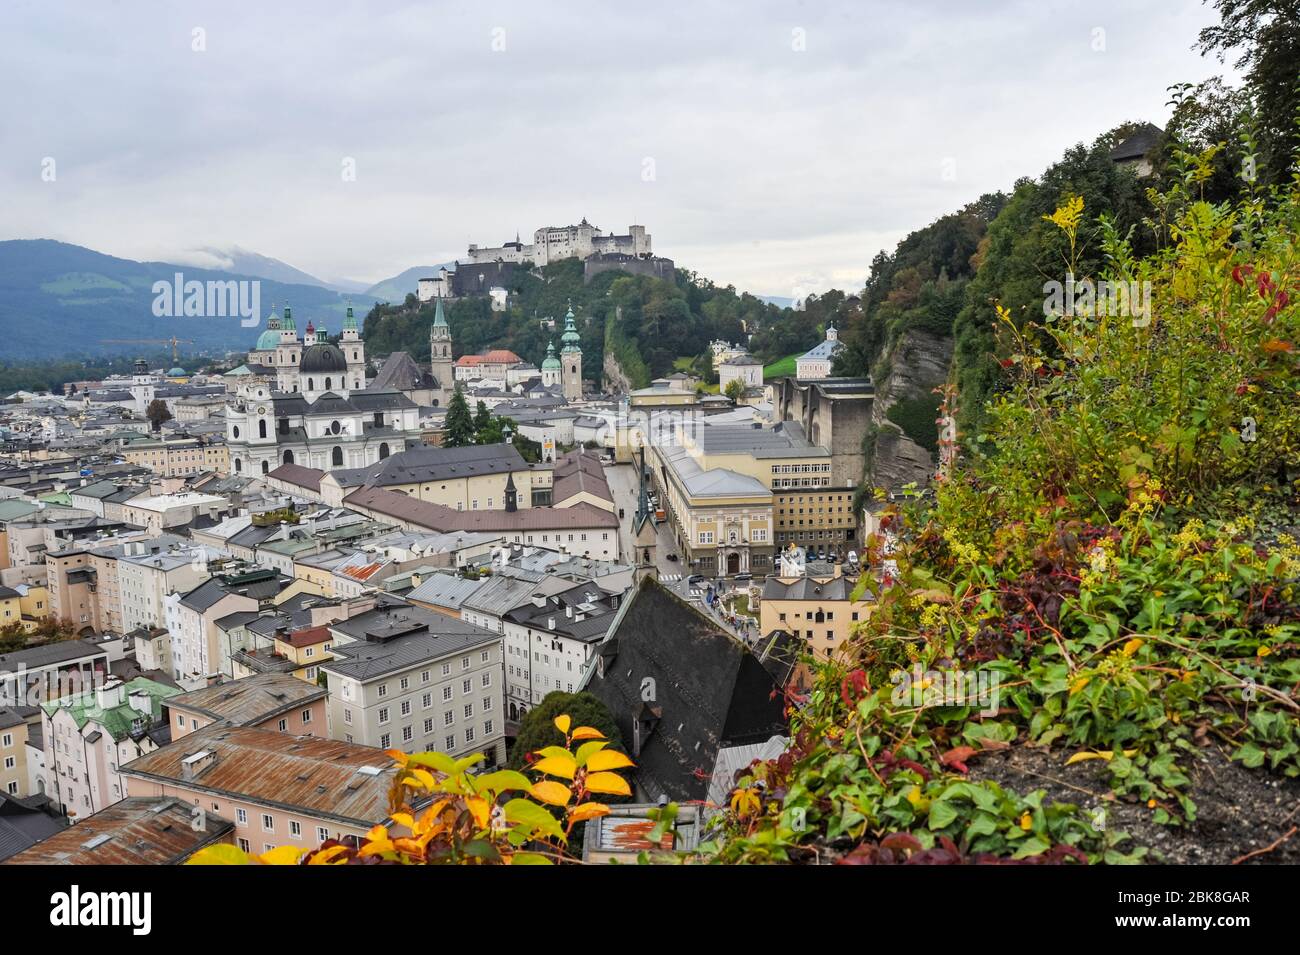 Festung Hohensalzburg auf dem Festungsberg in Salzburg Österreich Stockfoto